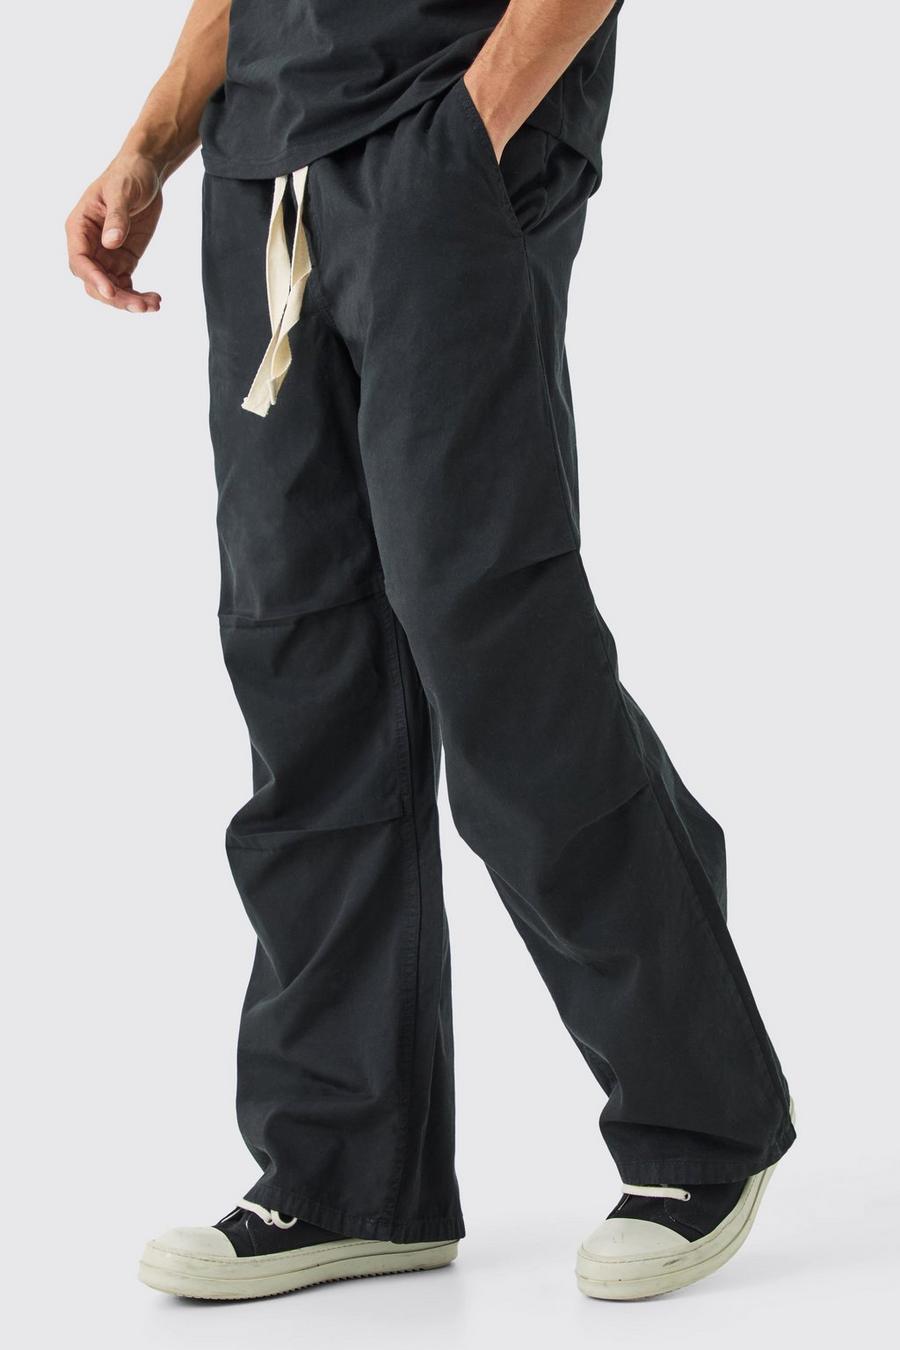 Lockere Hose mit elastischem Bund und Kontrast-Kordelzug, Black